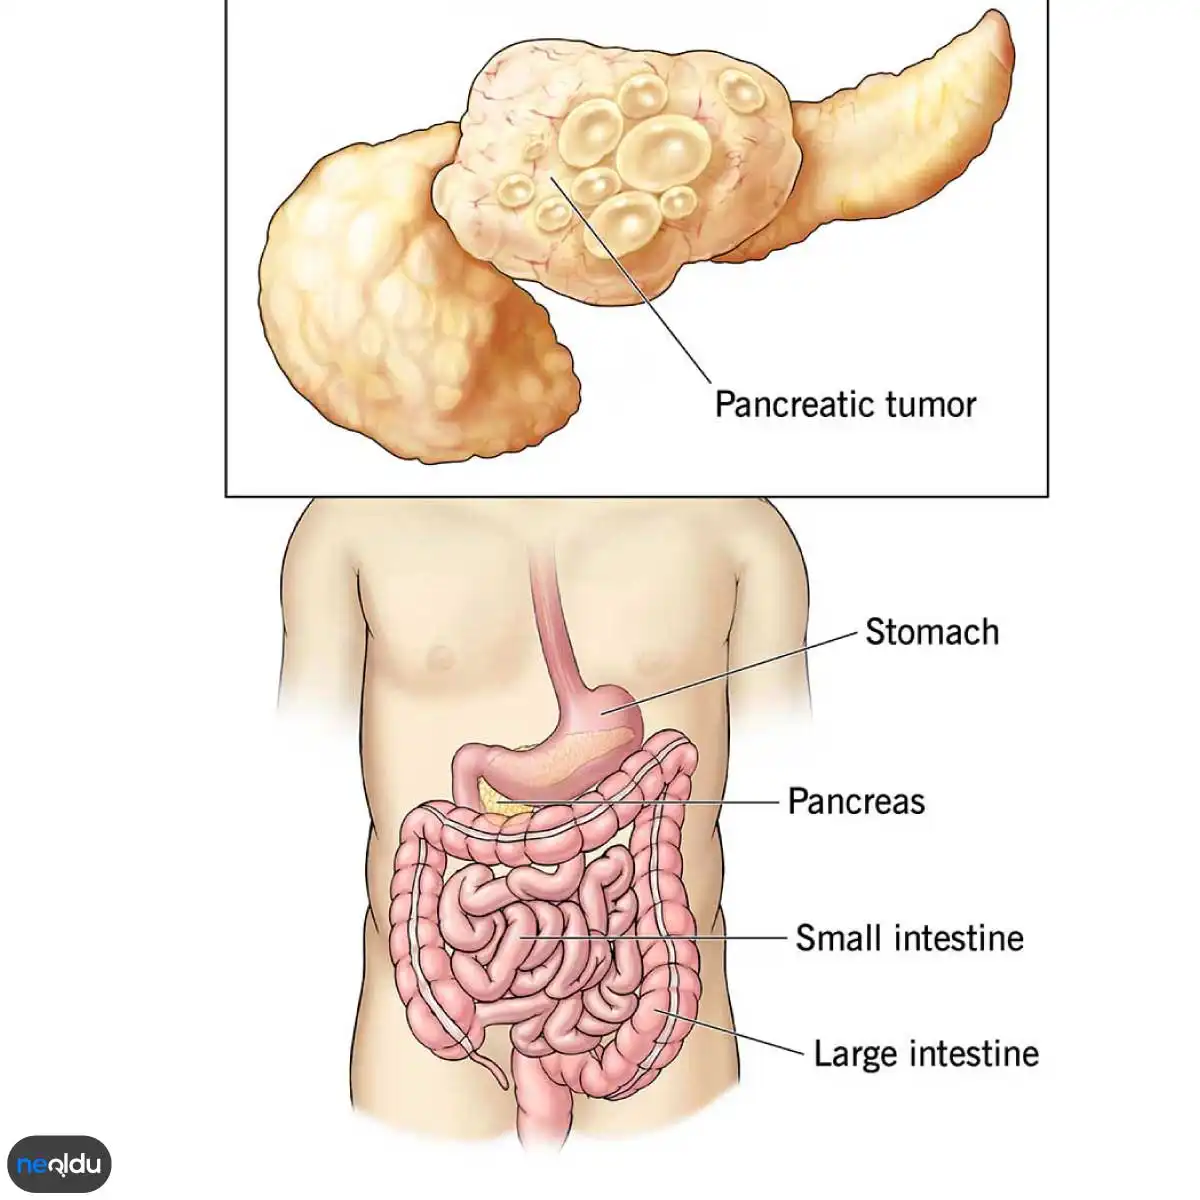 pankreas kanseri